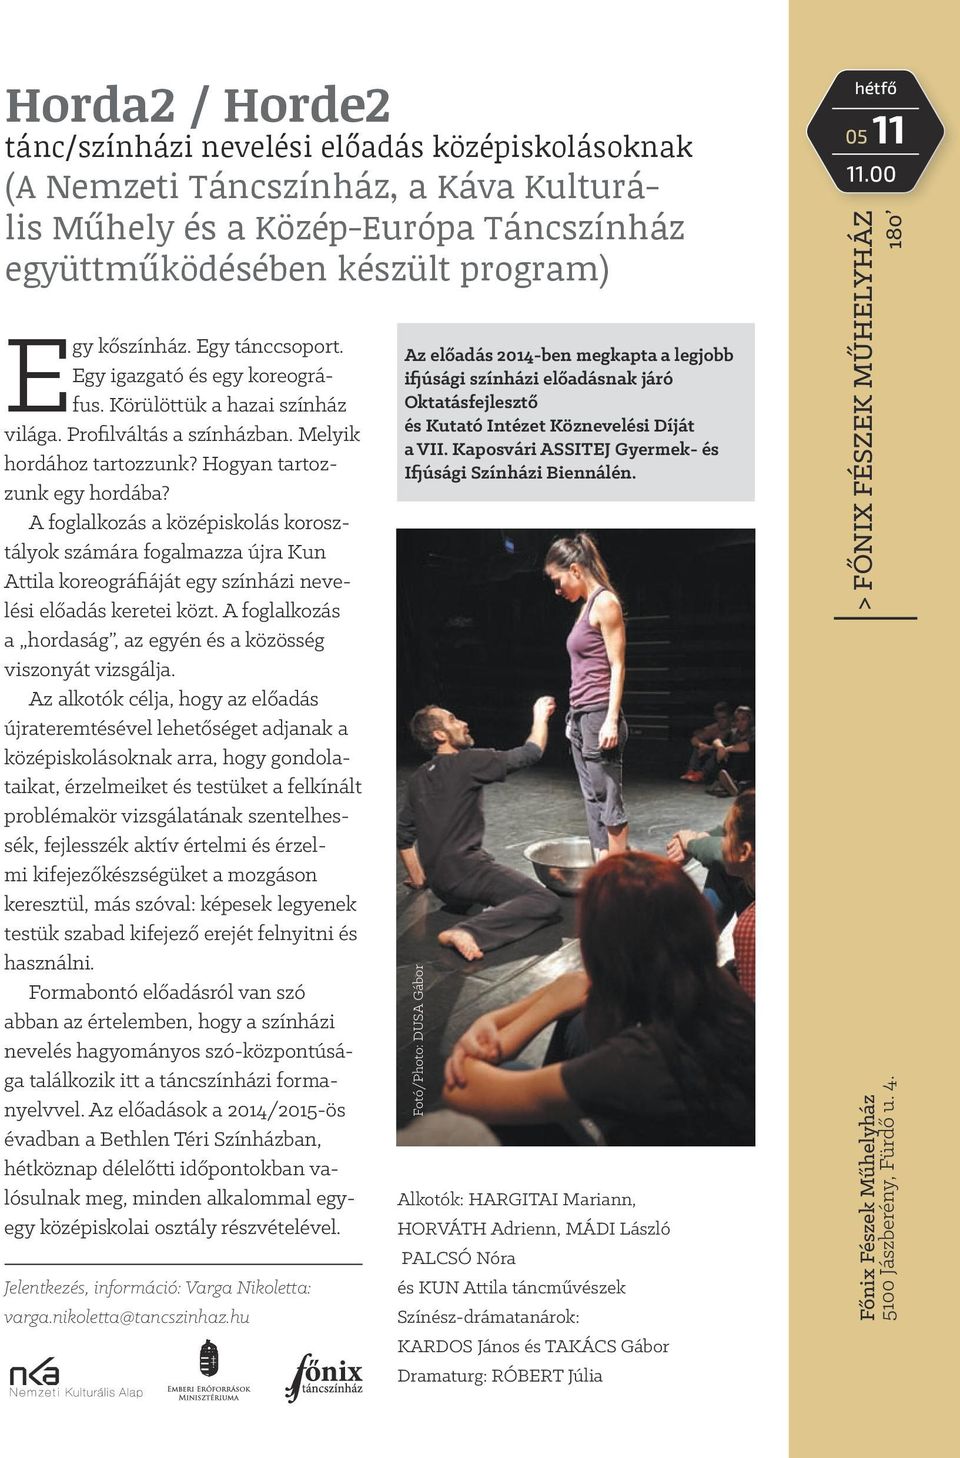 A foglalkozás a középiskolás korosztályok számára fogalmazza újra Kun Attila koreográfiáját egy színházi nevelési előadás keretei közt.